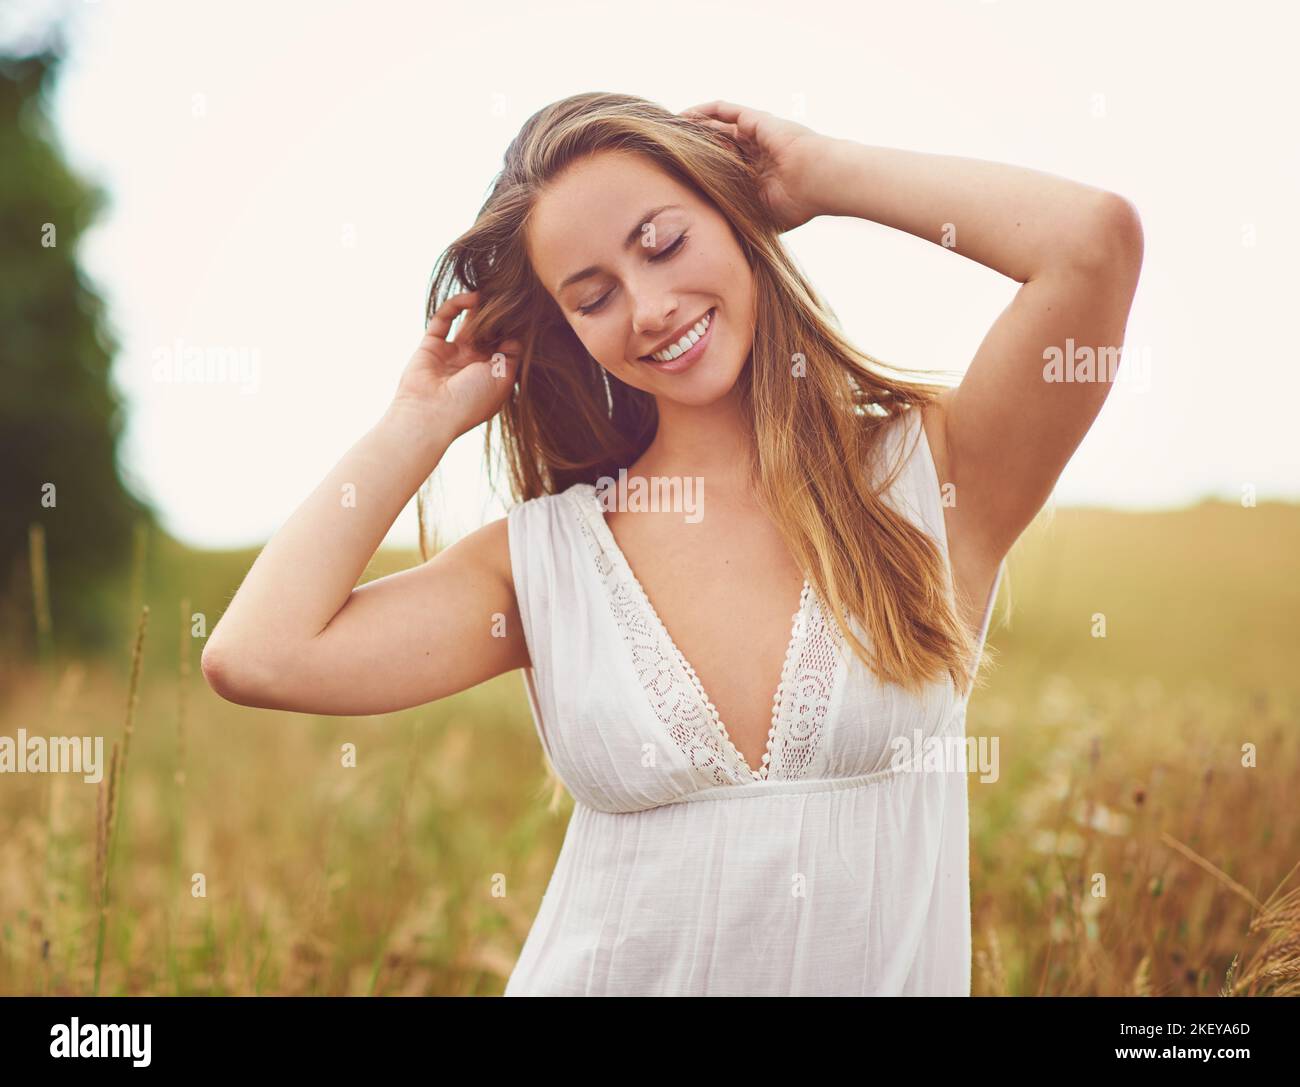 Trascorrere del tempo in natura è energia guaritrice, una giovane donna che trascorre del tempo in campagna. Foto Stock